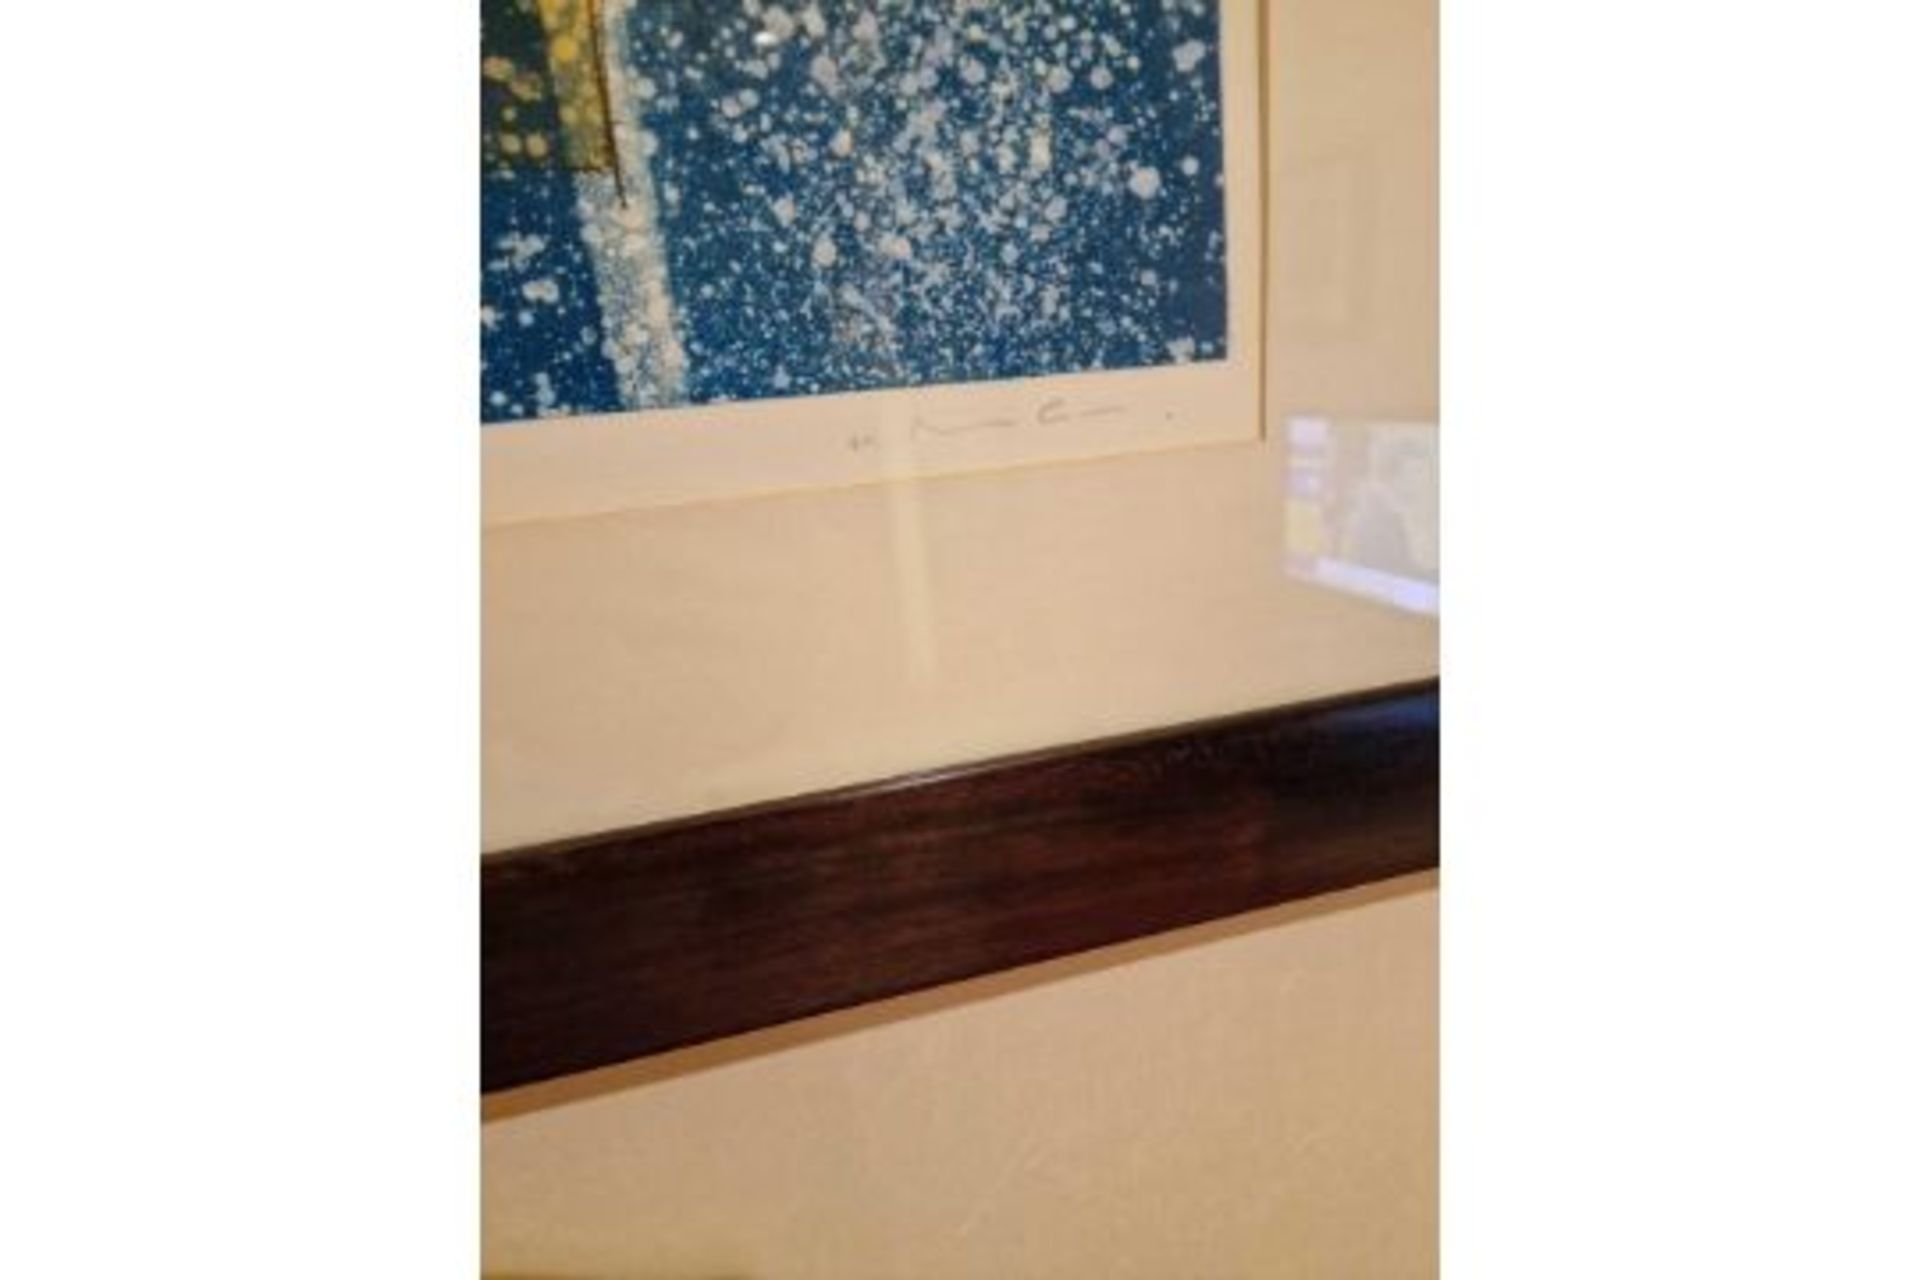 Framed Art Work Titled Diver Vert V Signed In Glazed Walnut Coloured Frame 90 x 77cm - Image 3 of 5